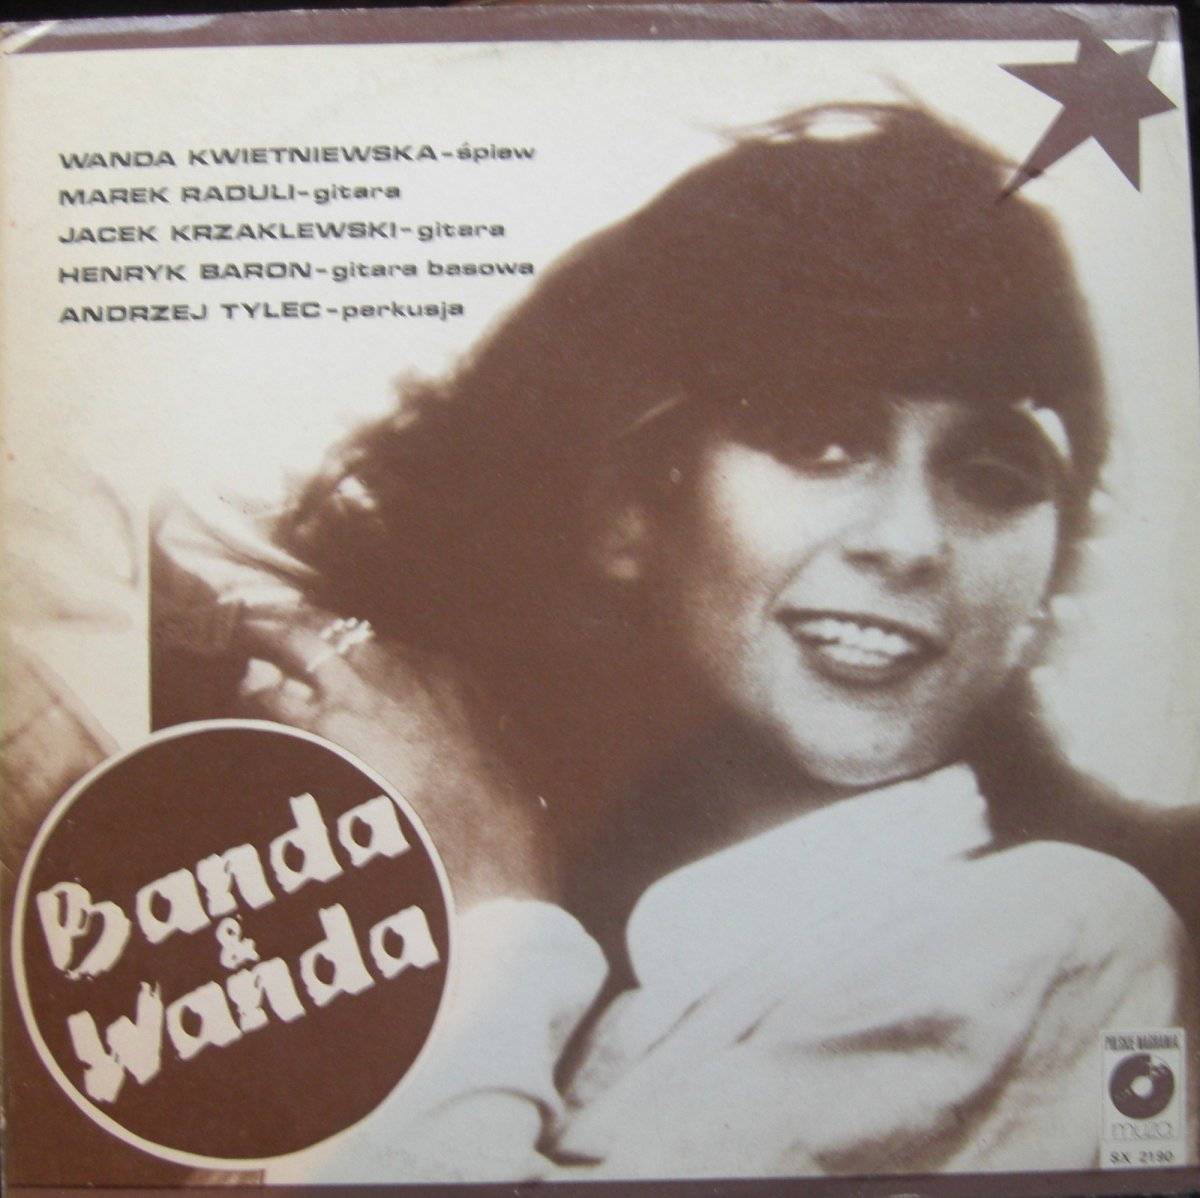 Banda & Wanda – Banda & Wanda